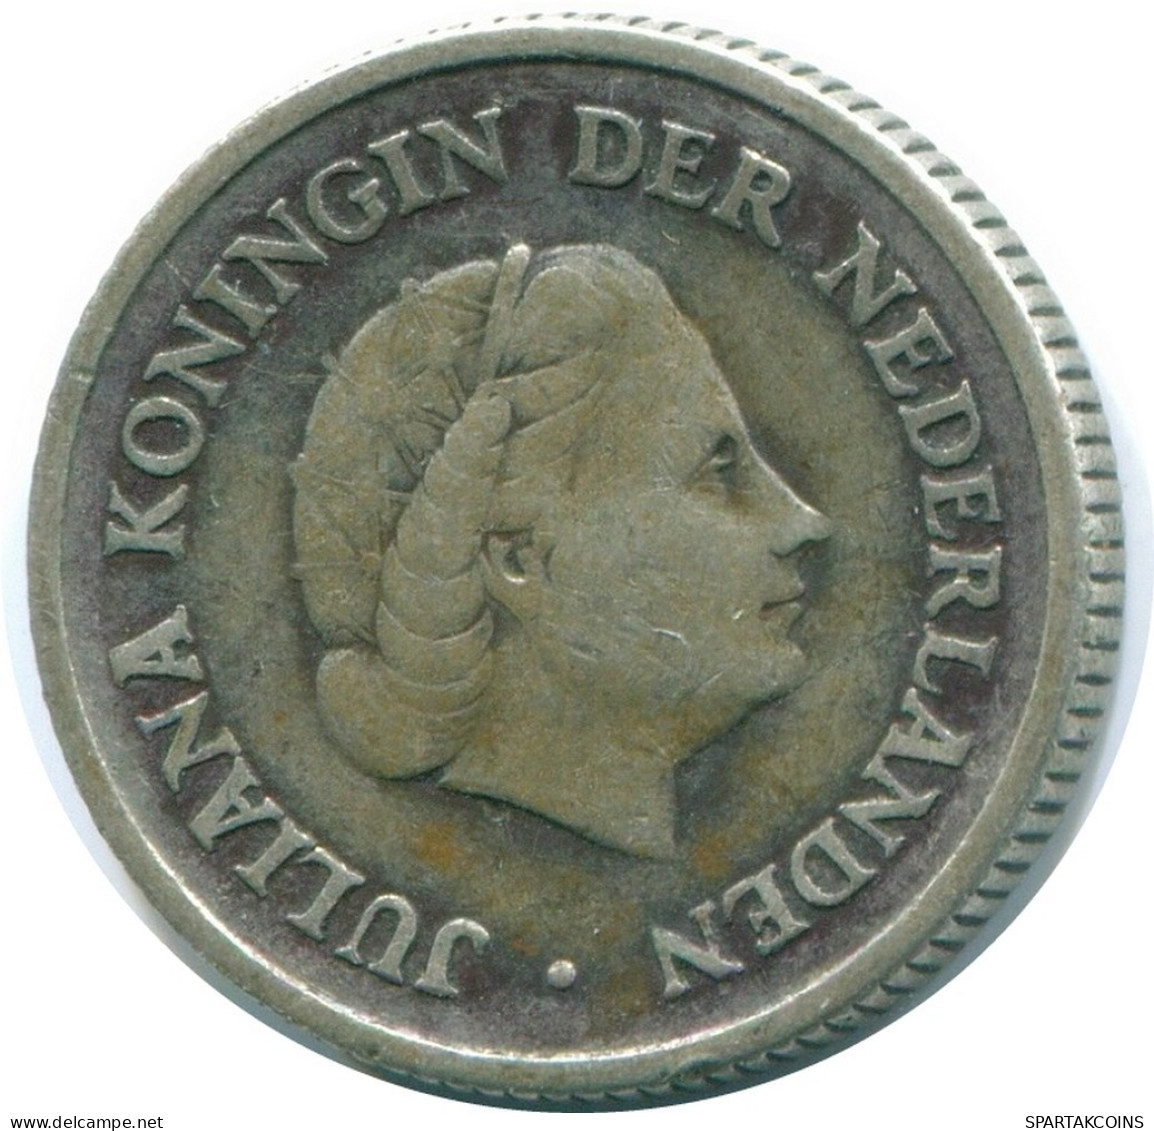 1/4 GULDEN 1956 NIEDERLÄNDISCHE ANTILLEN SILBER Koloniale Münze #NL10940.4.D.A - Antillas Neerlandesas